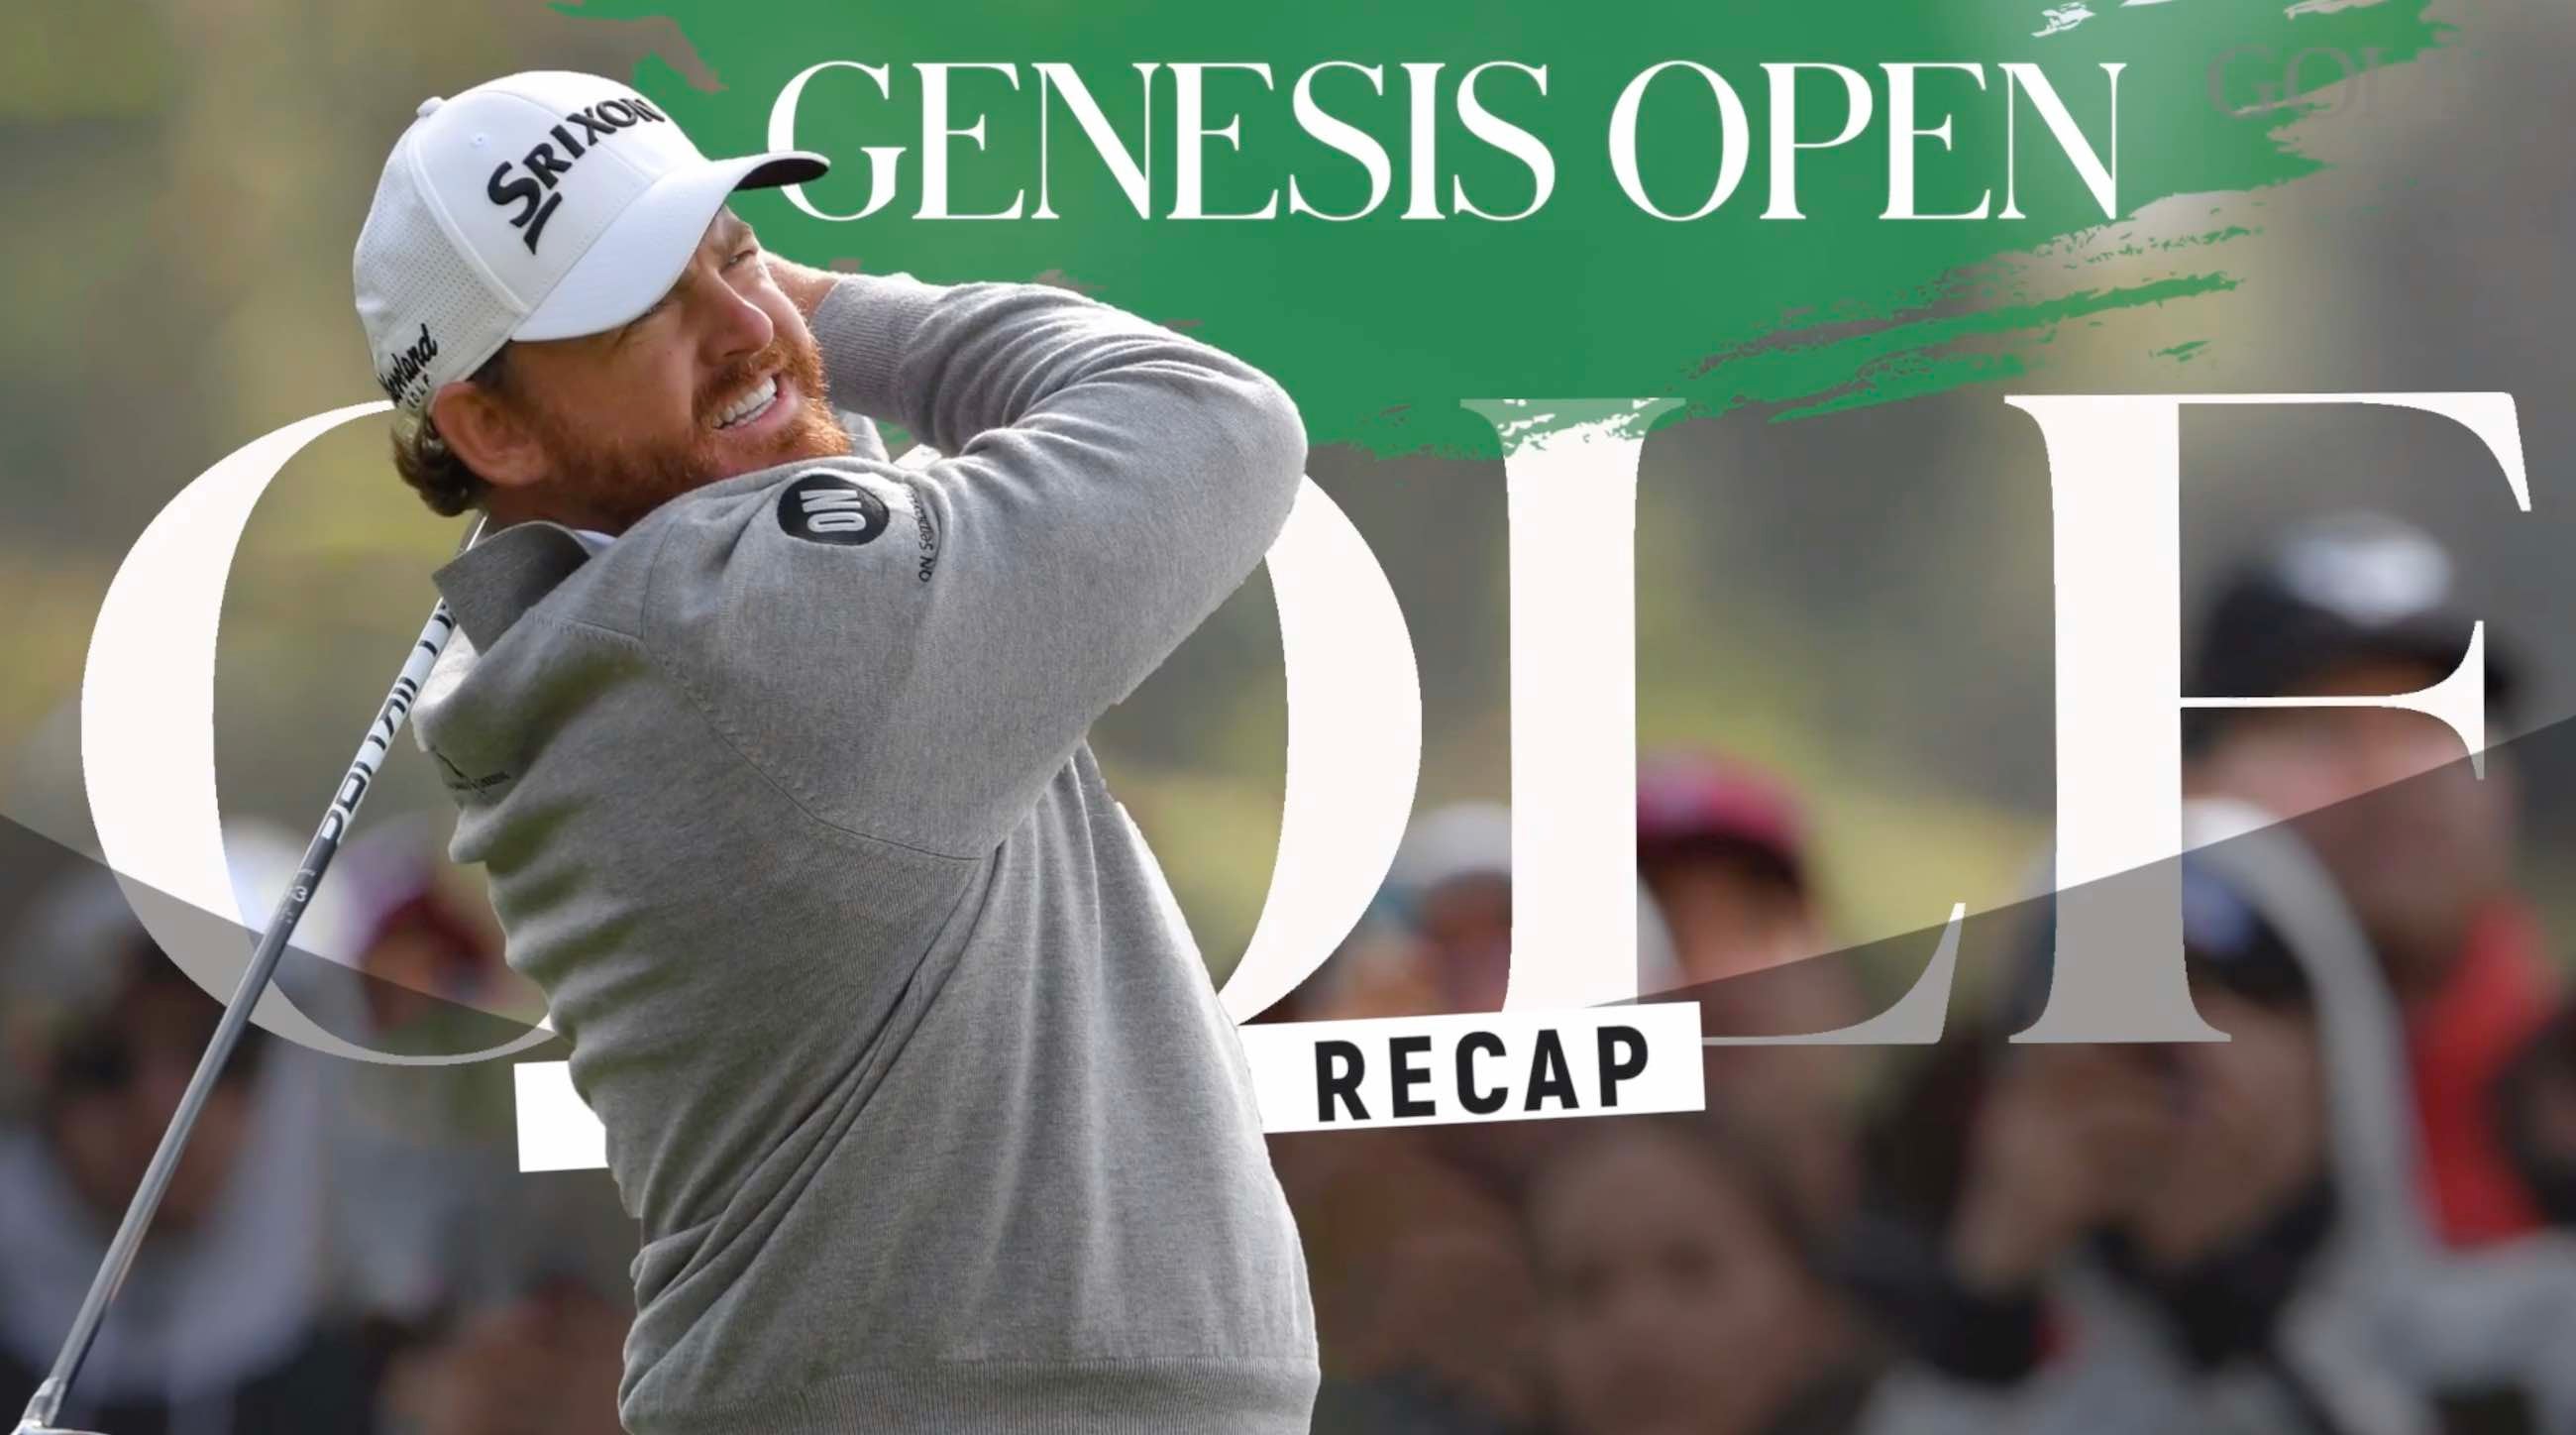 Genesis Open Recap Golf